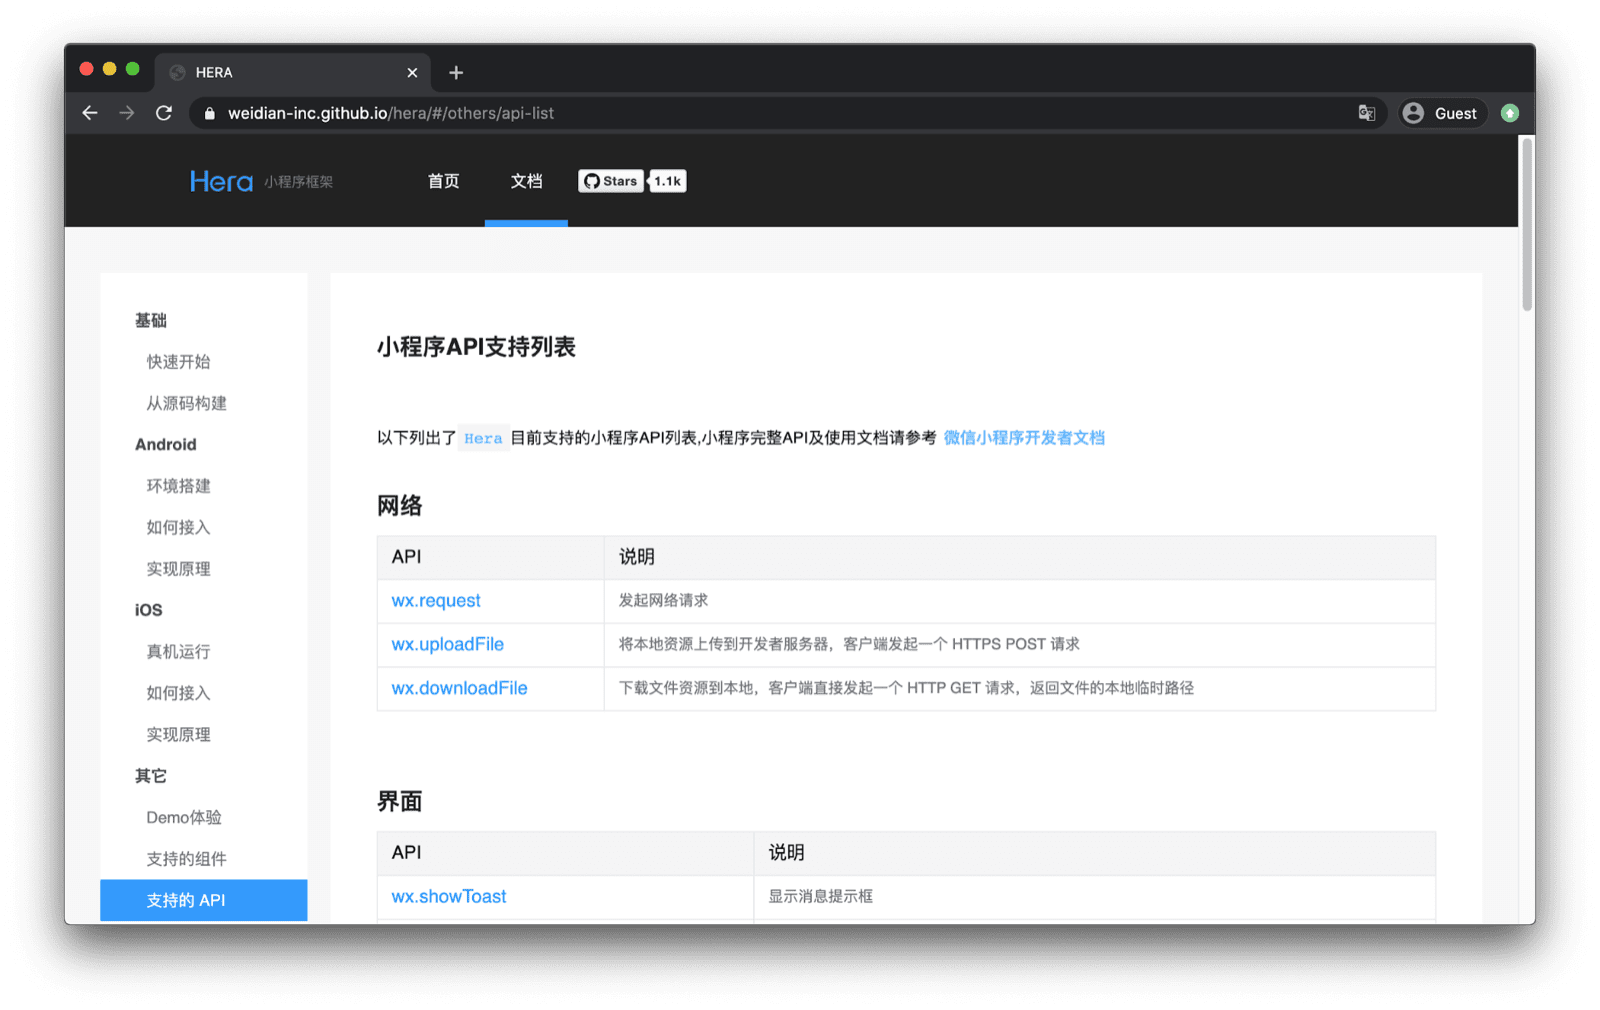 תיעוד של ה-framework של אפליקציית Hera Mini עם רשימת ממשקי ה-API של WeChat שנתמכים, כמו &#39;wx.request&#39; , &#39;wx.uploadFile&#39; וכו&#39;.